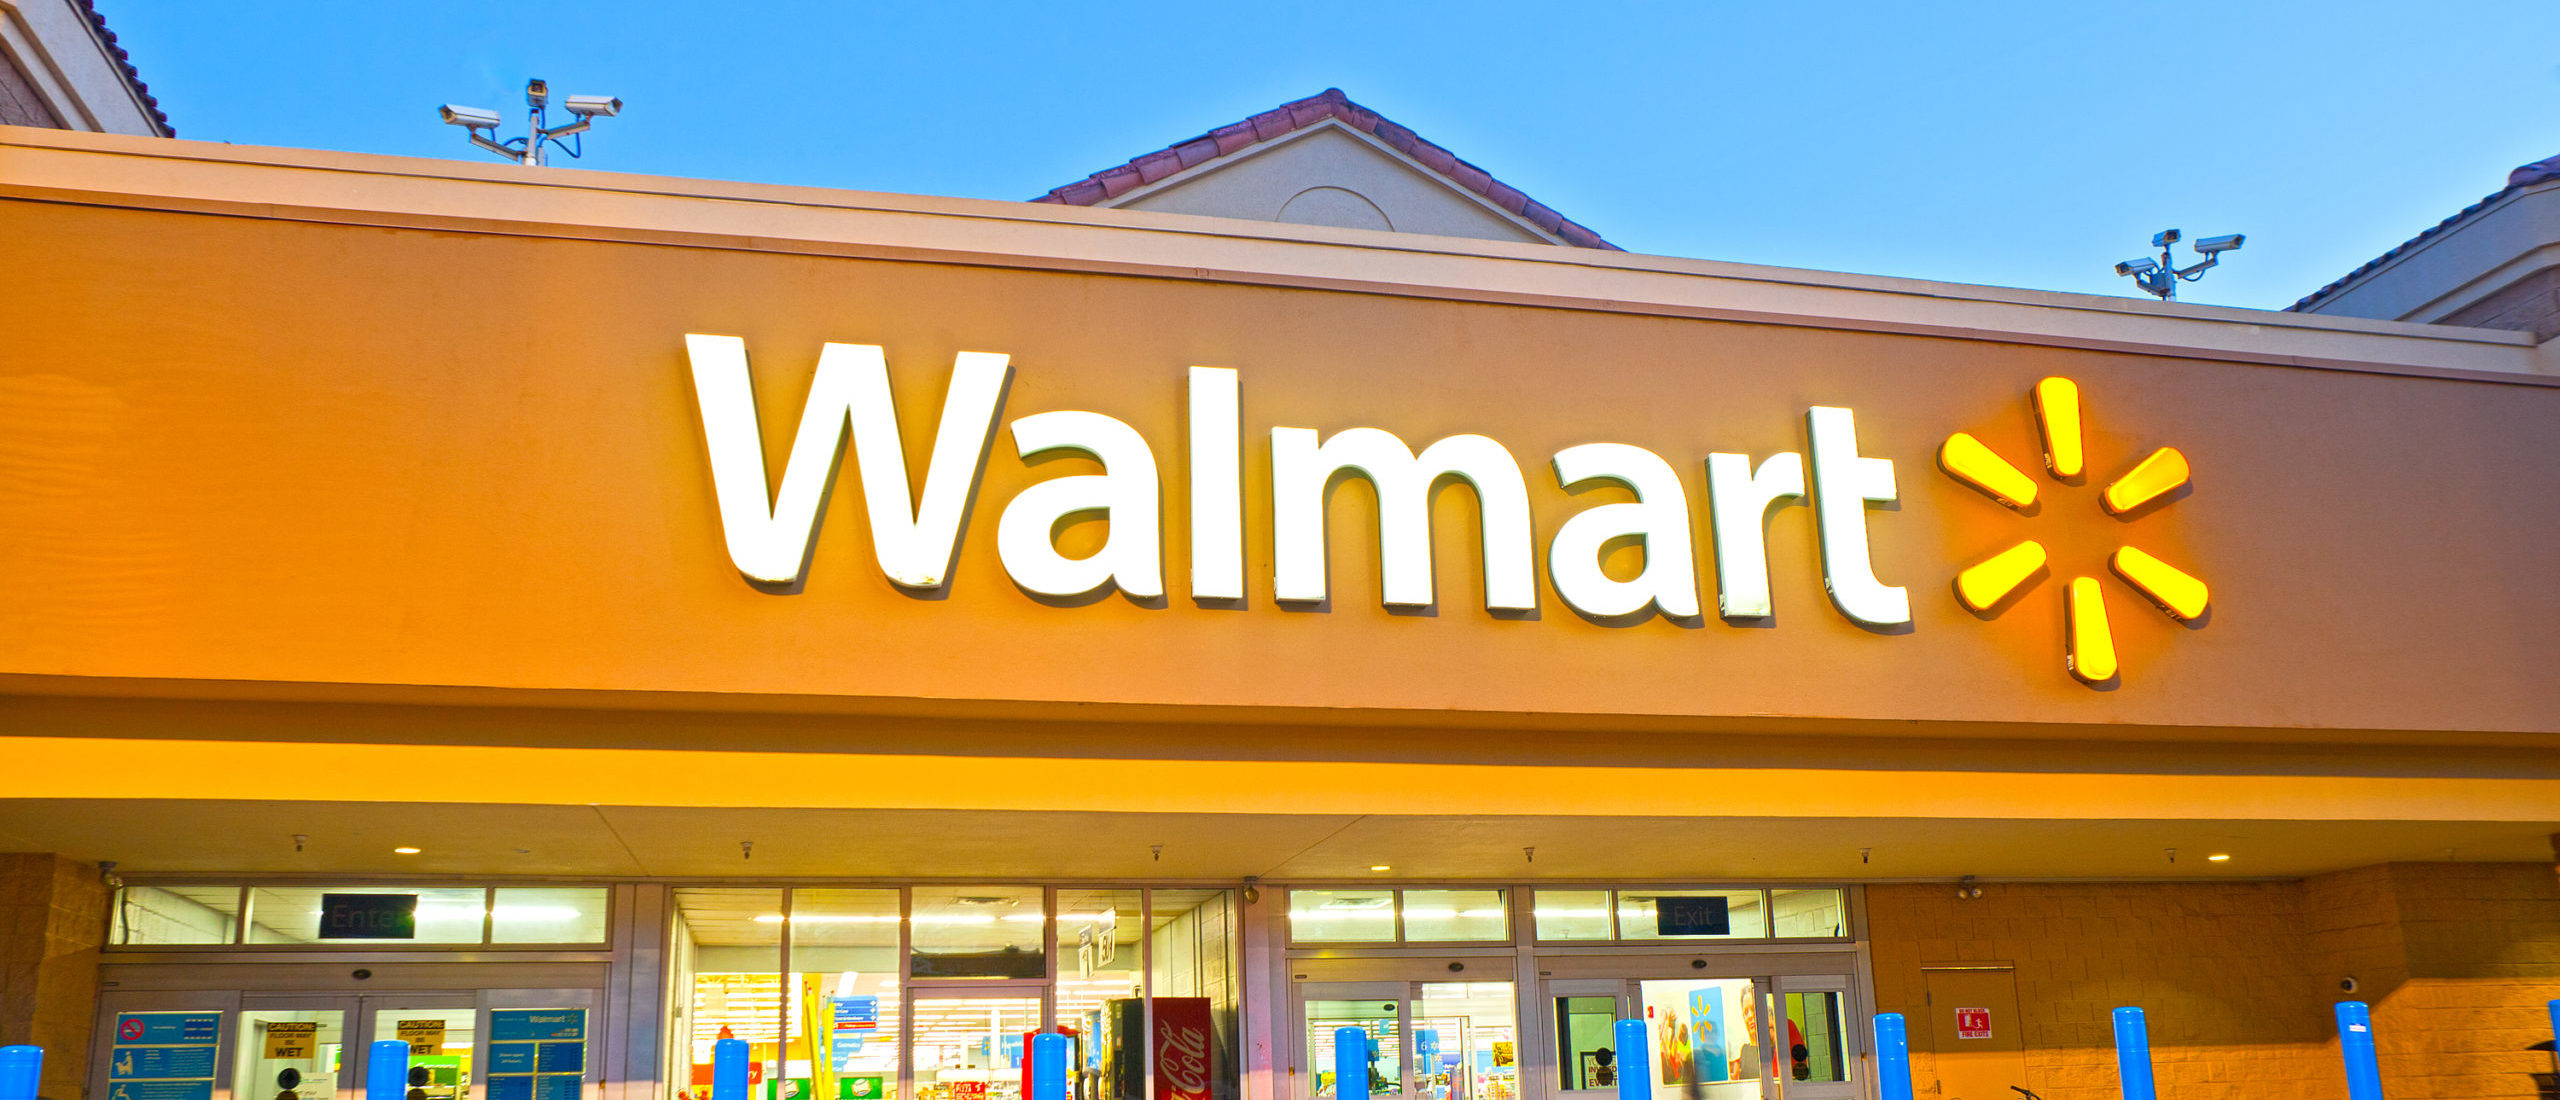 Walmart Announces Plans To Settle Opioid Lawsuit With $3.1 Billion